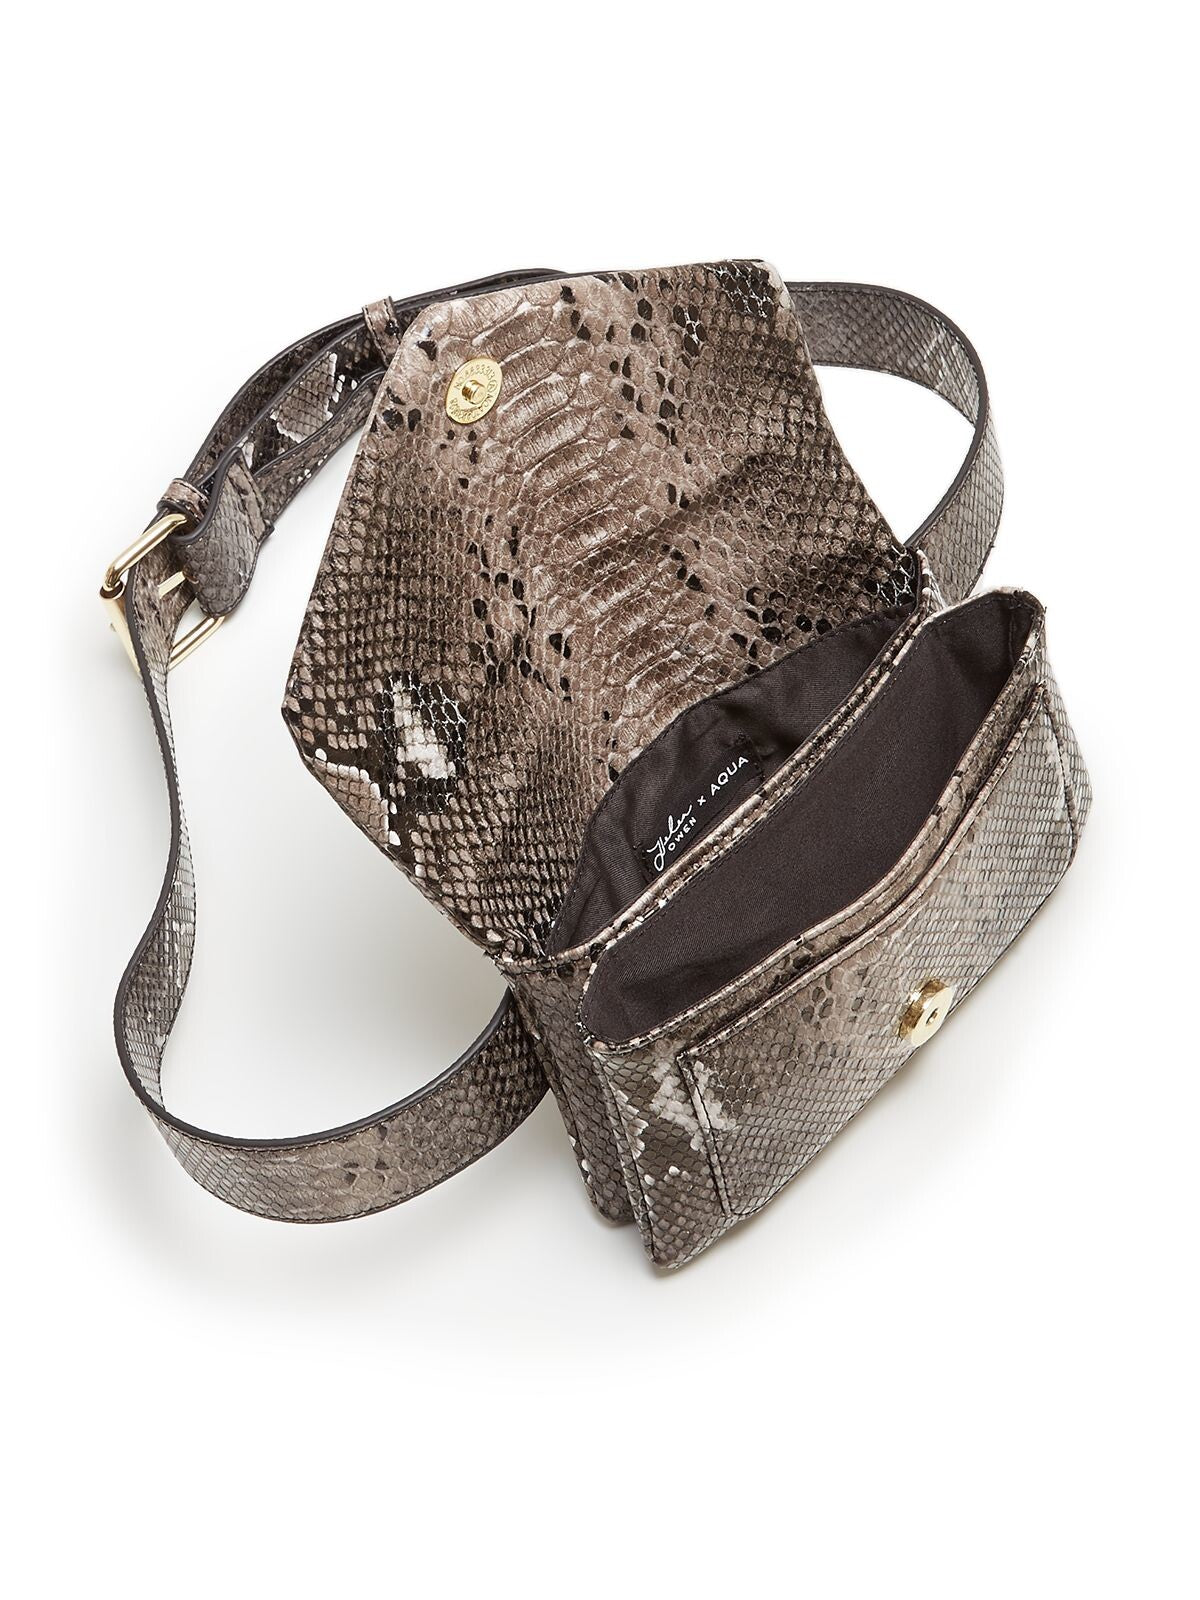 AQUA Women's Gray Helen Owen Snake Print Textured Adjustable Strap Belt Bag Purse